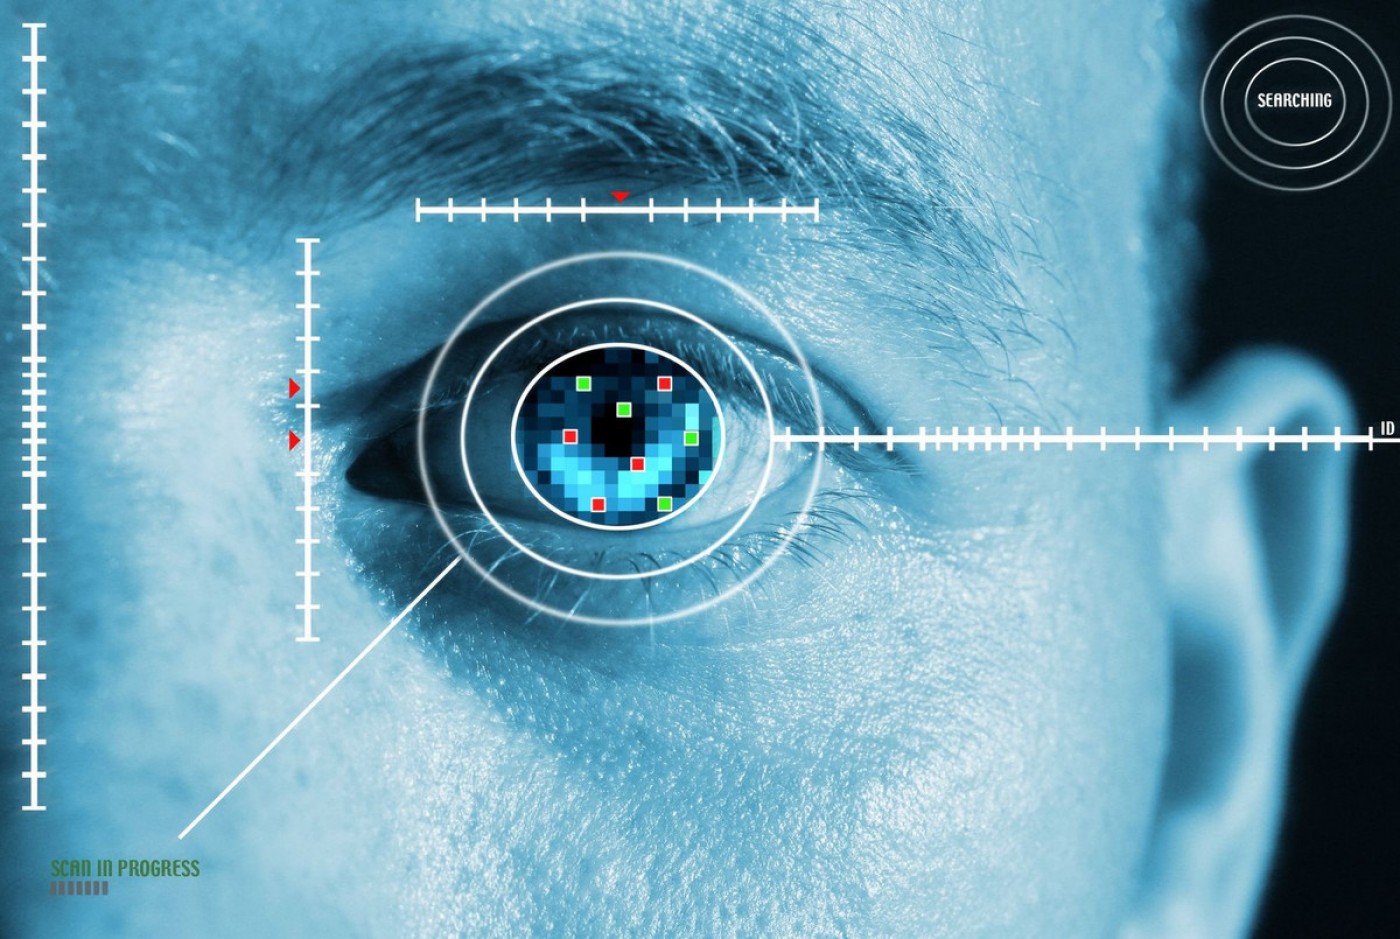 فناوری تشخیص چهره جایگزین گذرنامه می شود